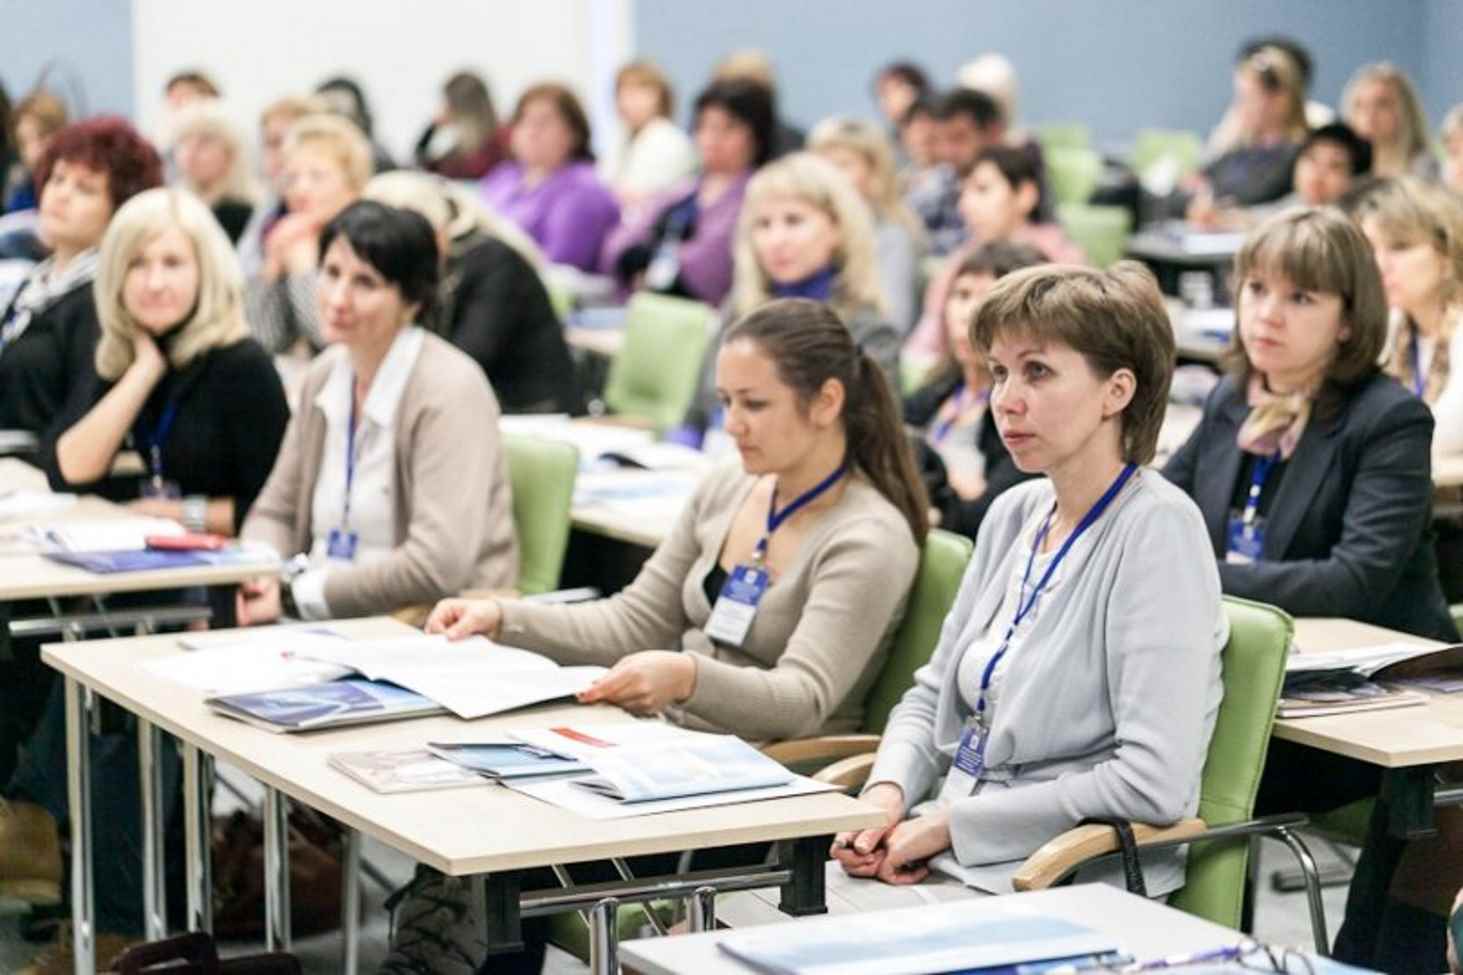 po-25-dekabrya-pedagogi-smogut-zapisatsya-na-3-kursa-za-990-rublej